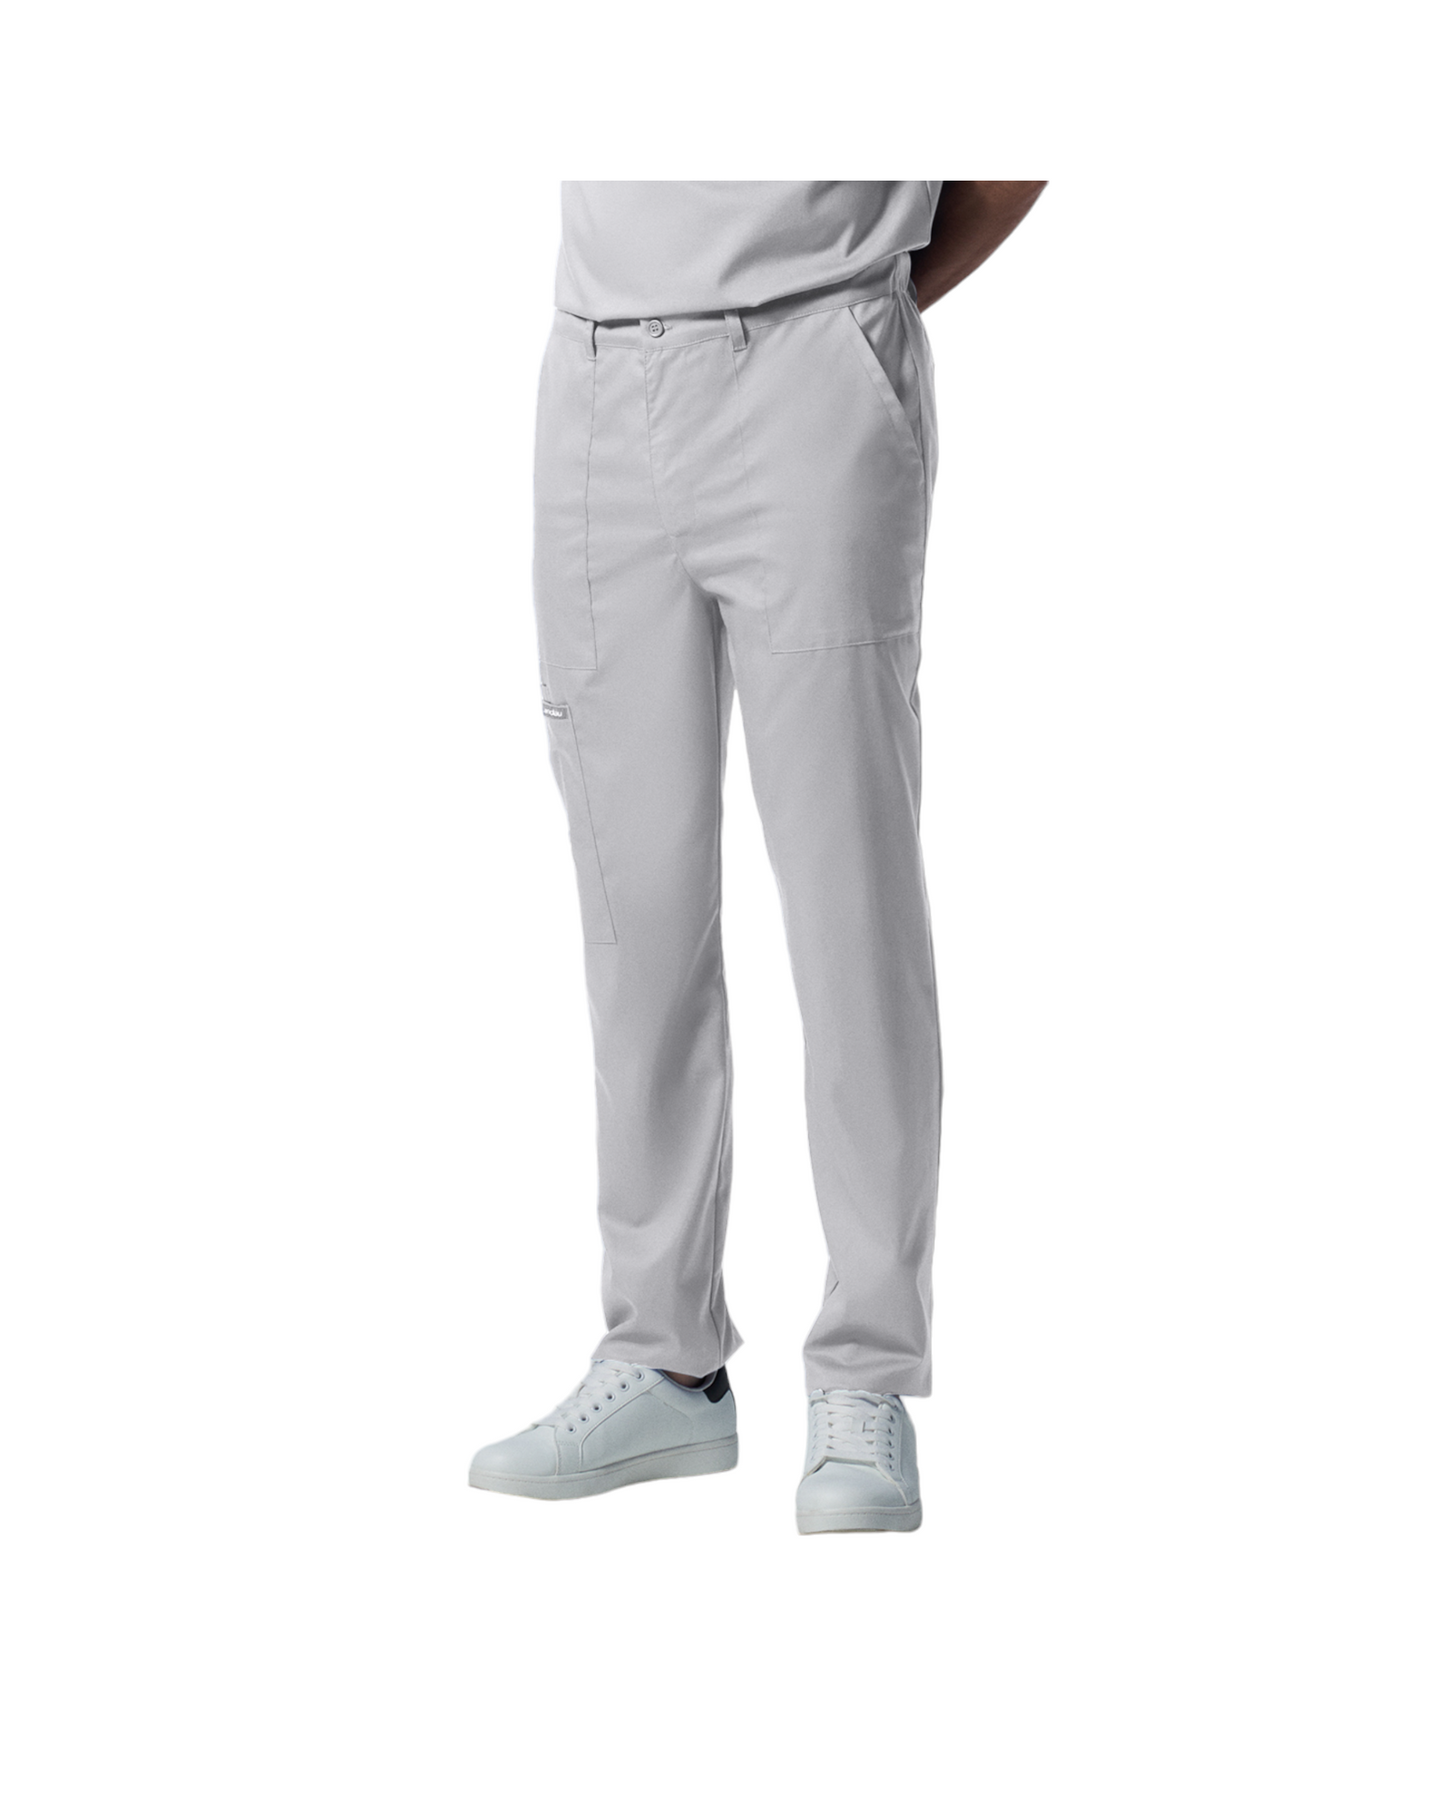 Pantalon jogger pour hommes Landau Proflex #LB408 OS avec braguette zippée avec élastique dissimulé, cordon de serrage, 2 poches cargo plaqué dont une avec cordon élastique, 2 poches avant et 2 poches arrière., couleur Blanc